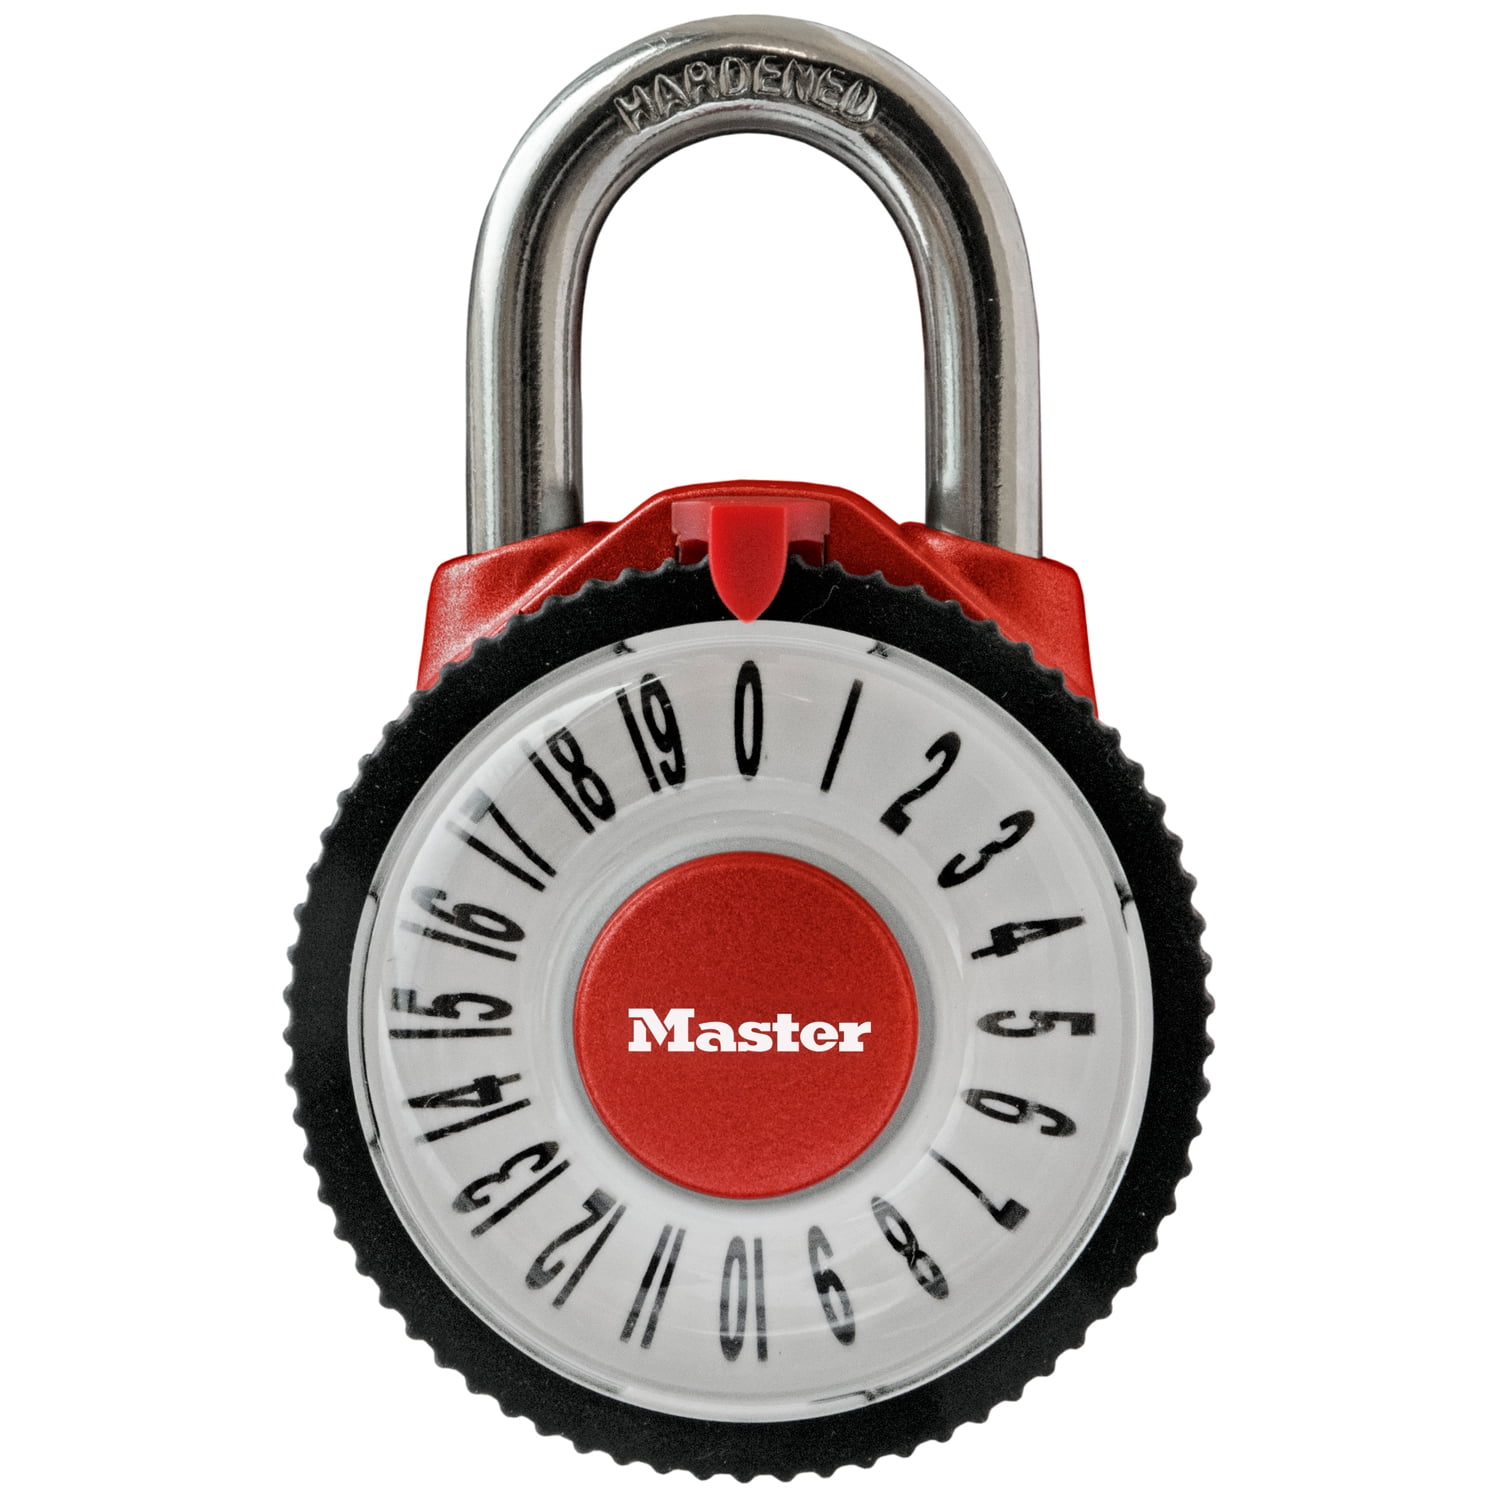 Master Lock Aluminum 48 mm (1-7/8 in) Combination Lock, 19 mm (3/4